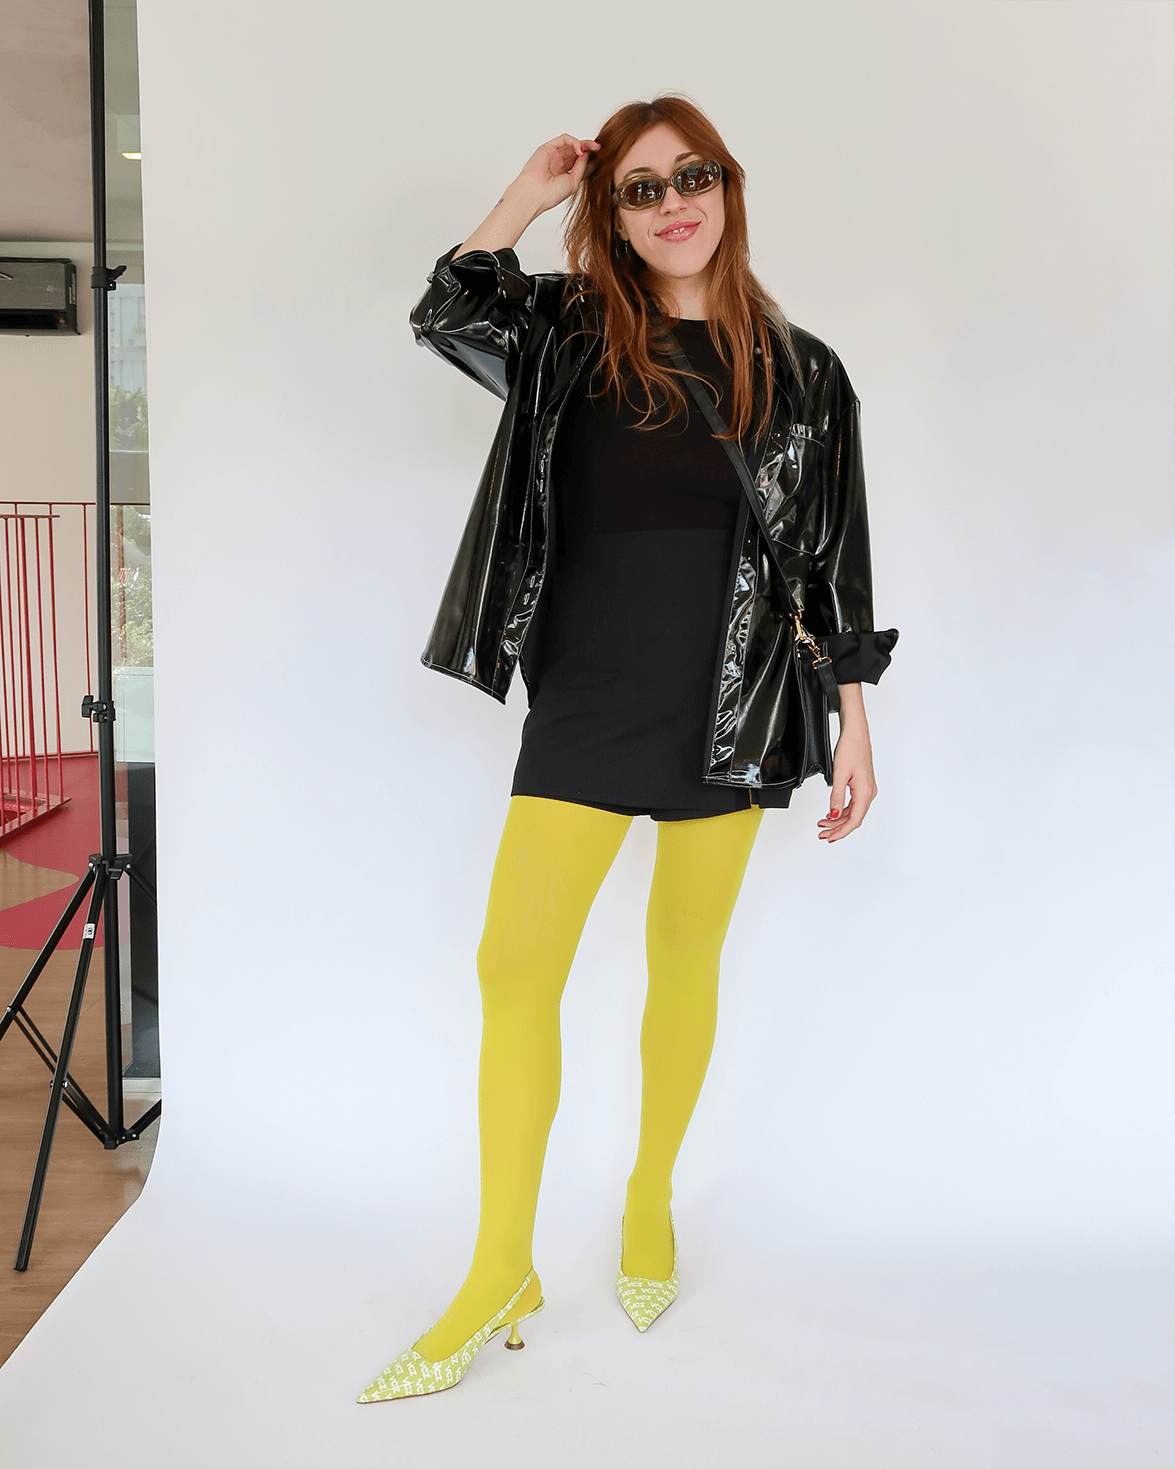 Giulia Coronato - meia calça colorida - meia calça calzedonia - meia-calça como usar - looks com meia calça - https://stealthelook.com.br